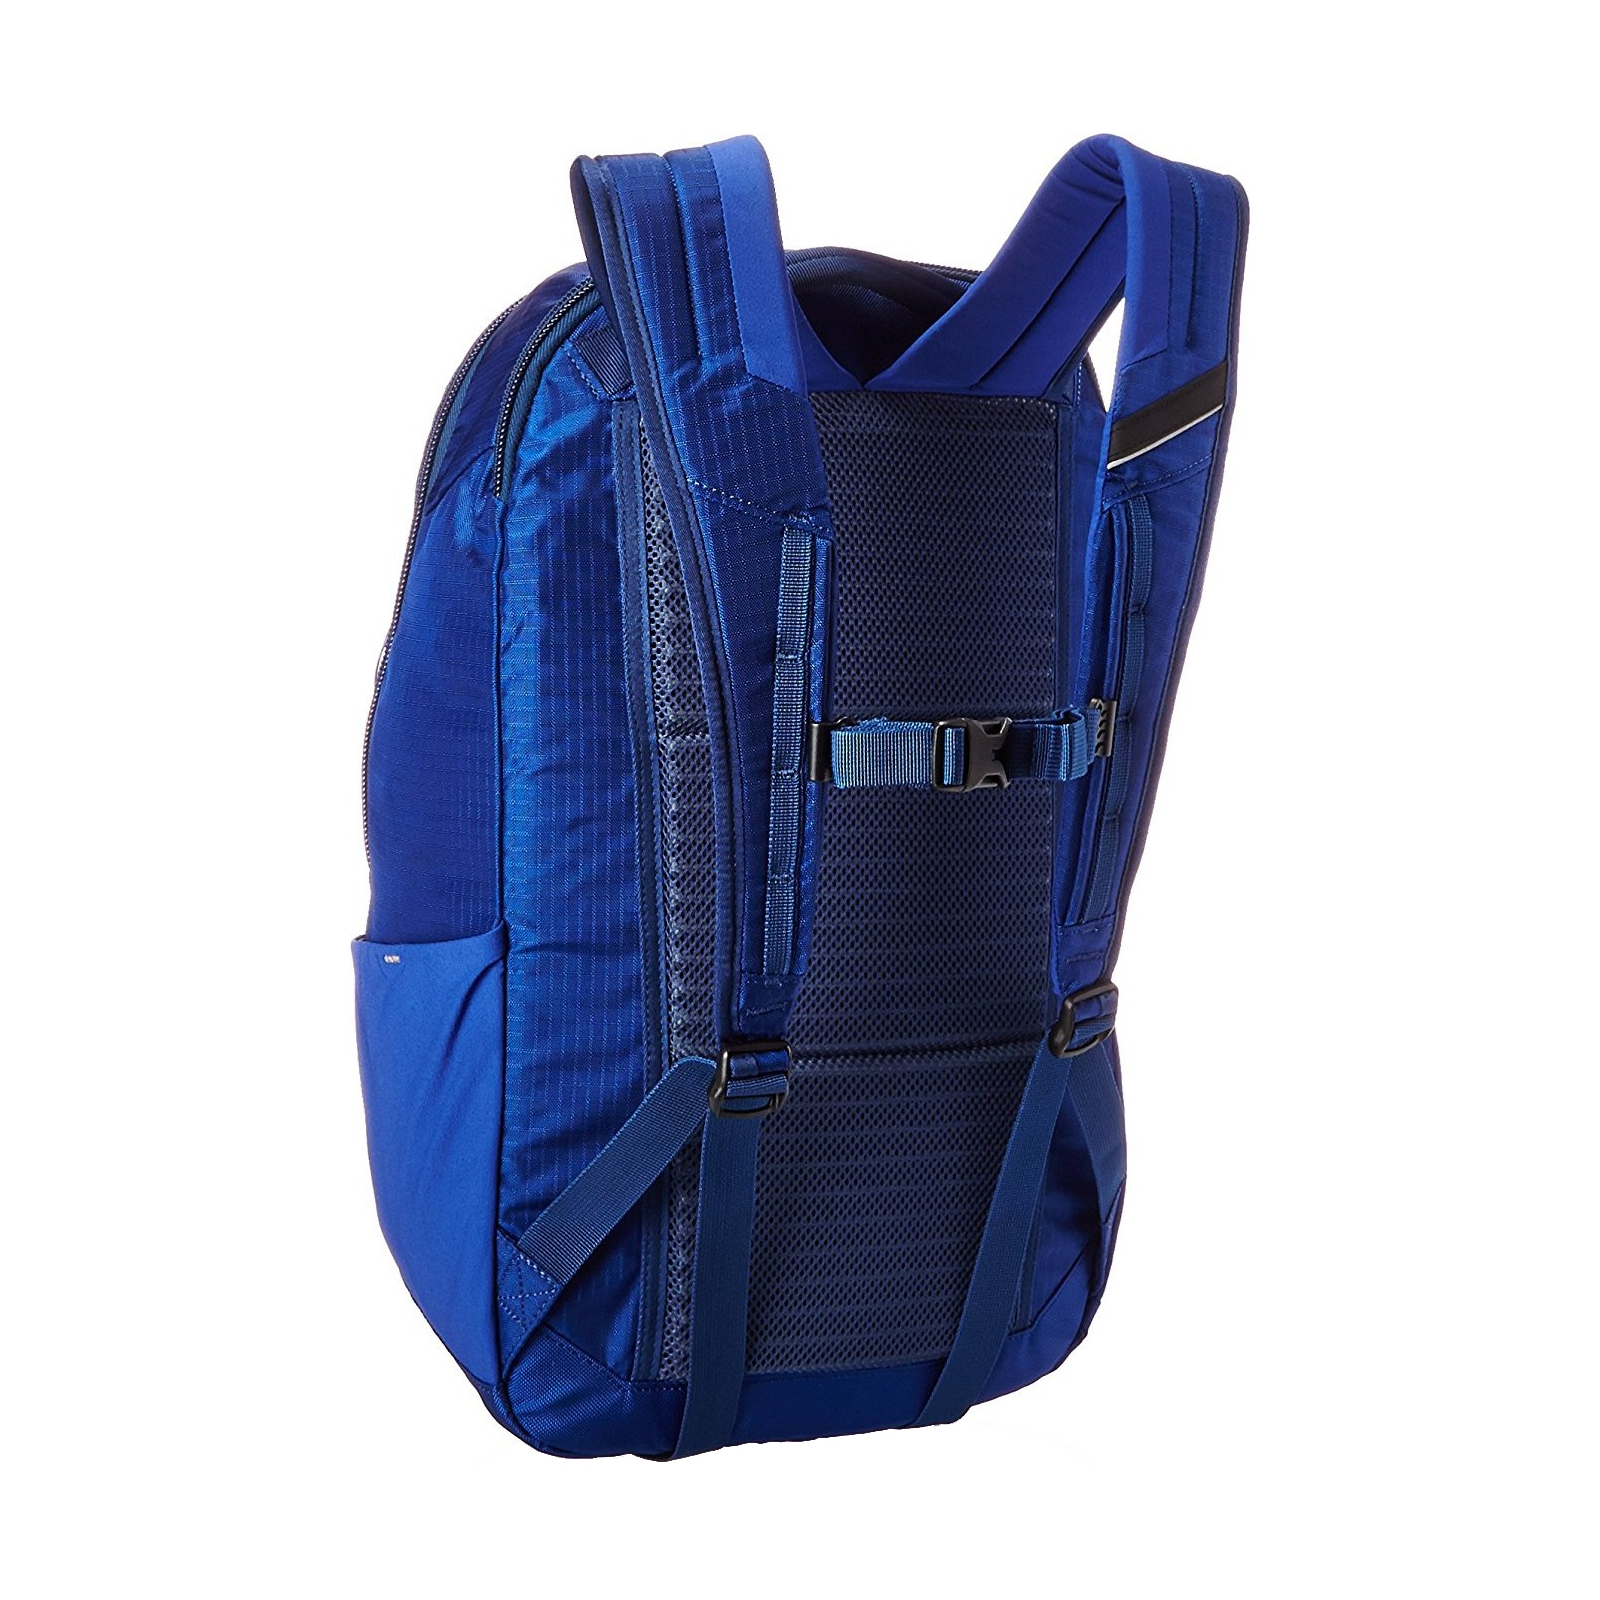 Рюкзак туристический Ogio APOLLO PACK BLUE/NAVY (111106.558) изображение 2